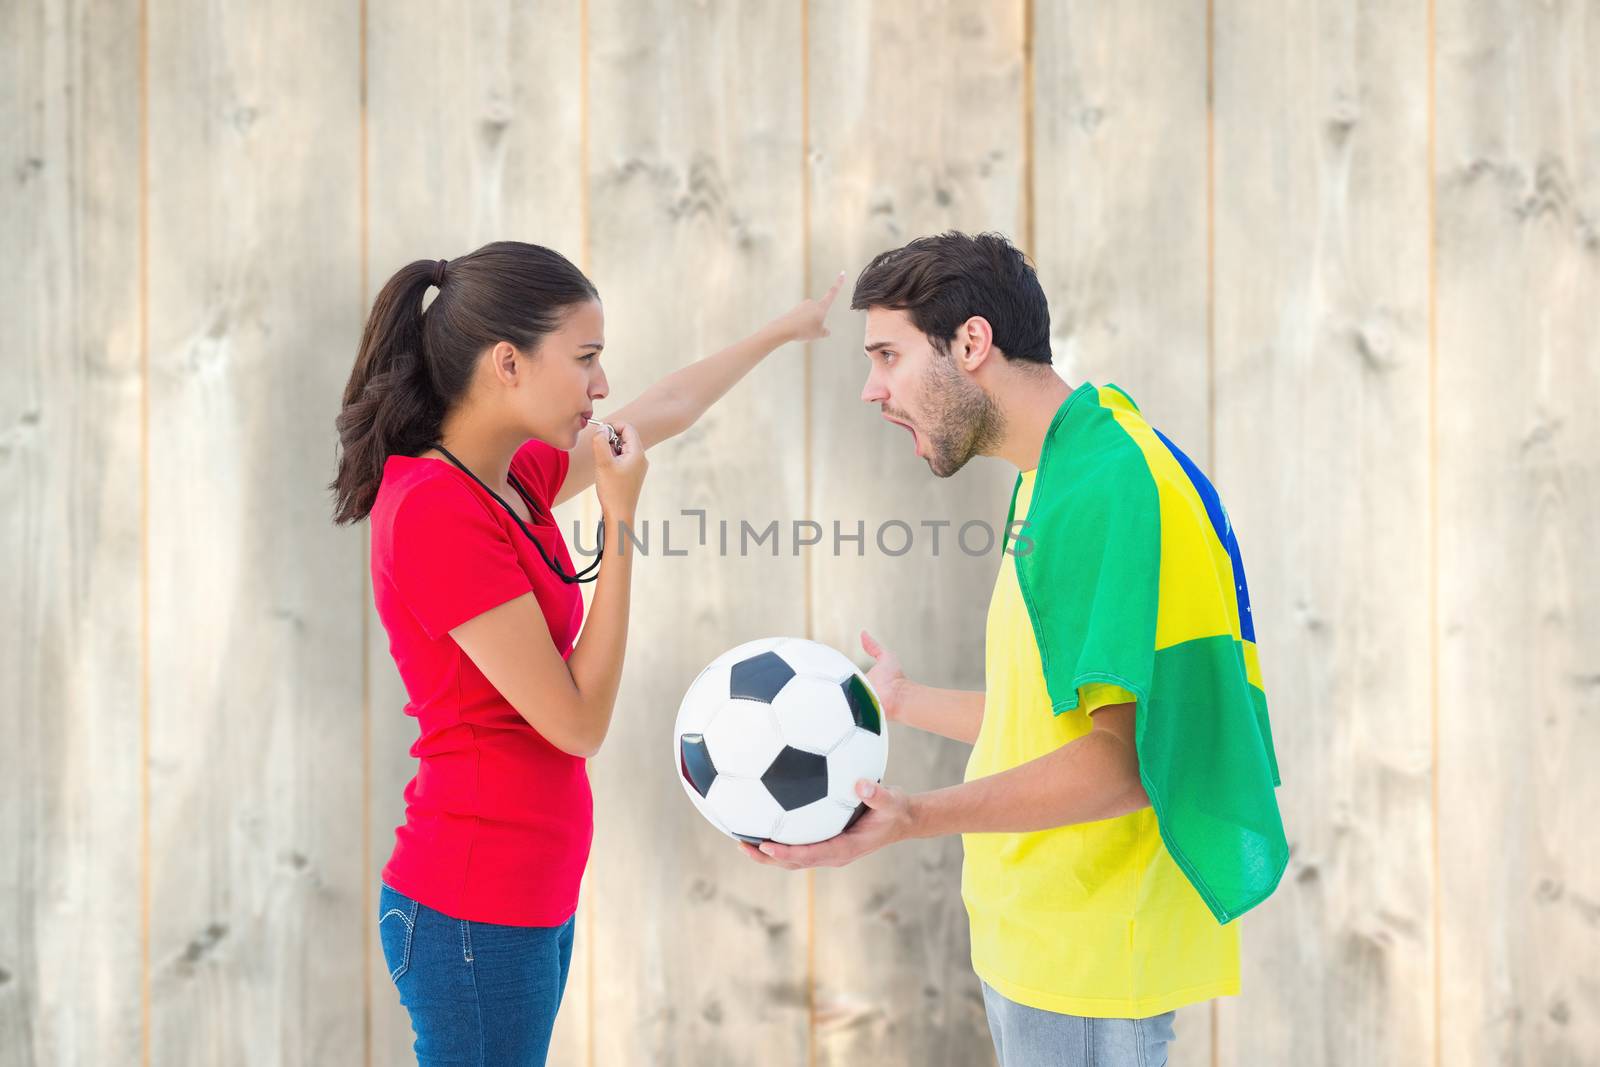 Brunette sending off a brazilian fan  against pale wooden planks